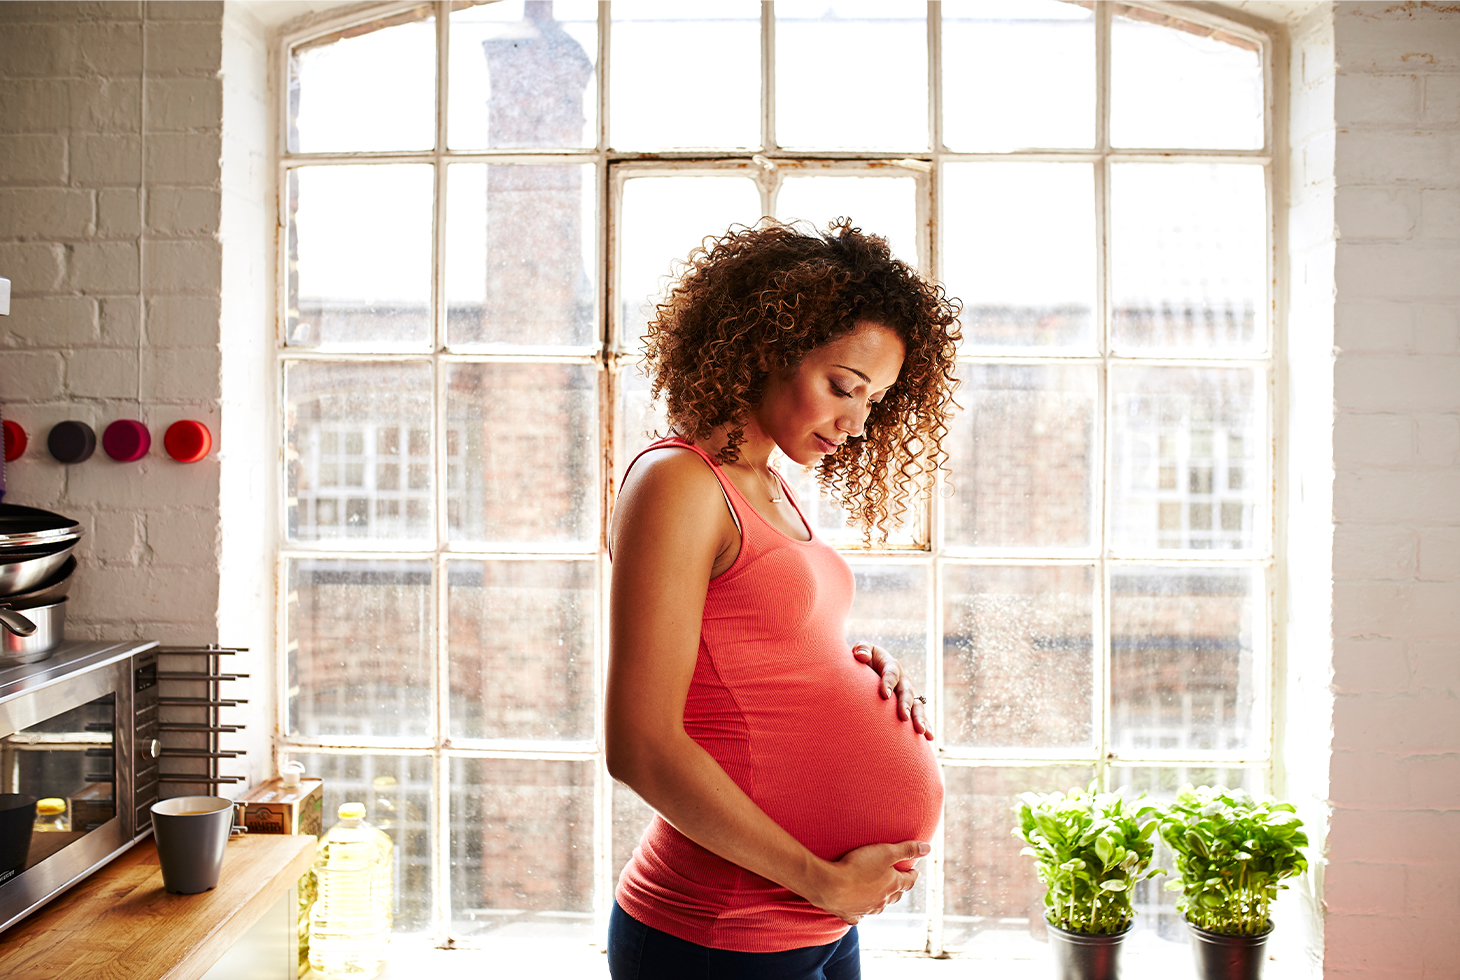 Portrait d’une femme enceinte les mains posées sur son ventre. Visuel d’illustration pour la thématique de l’incontinence liée à la grossesse.